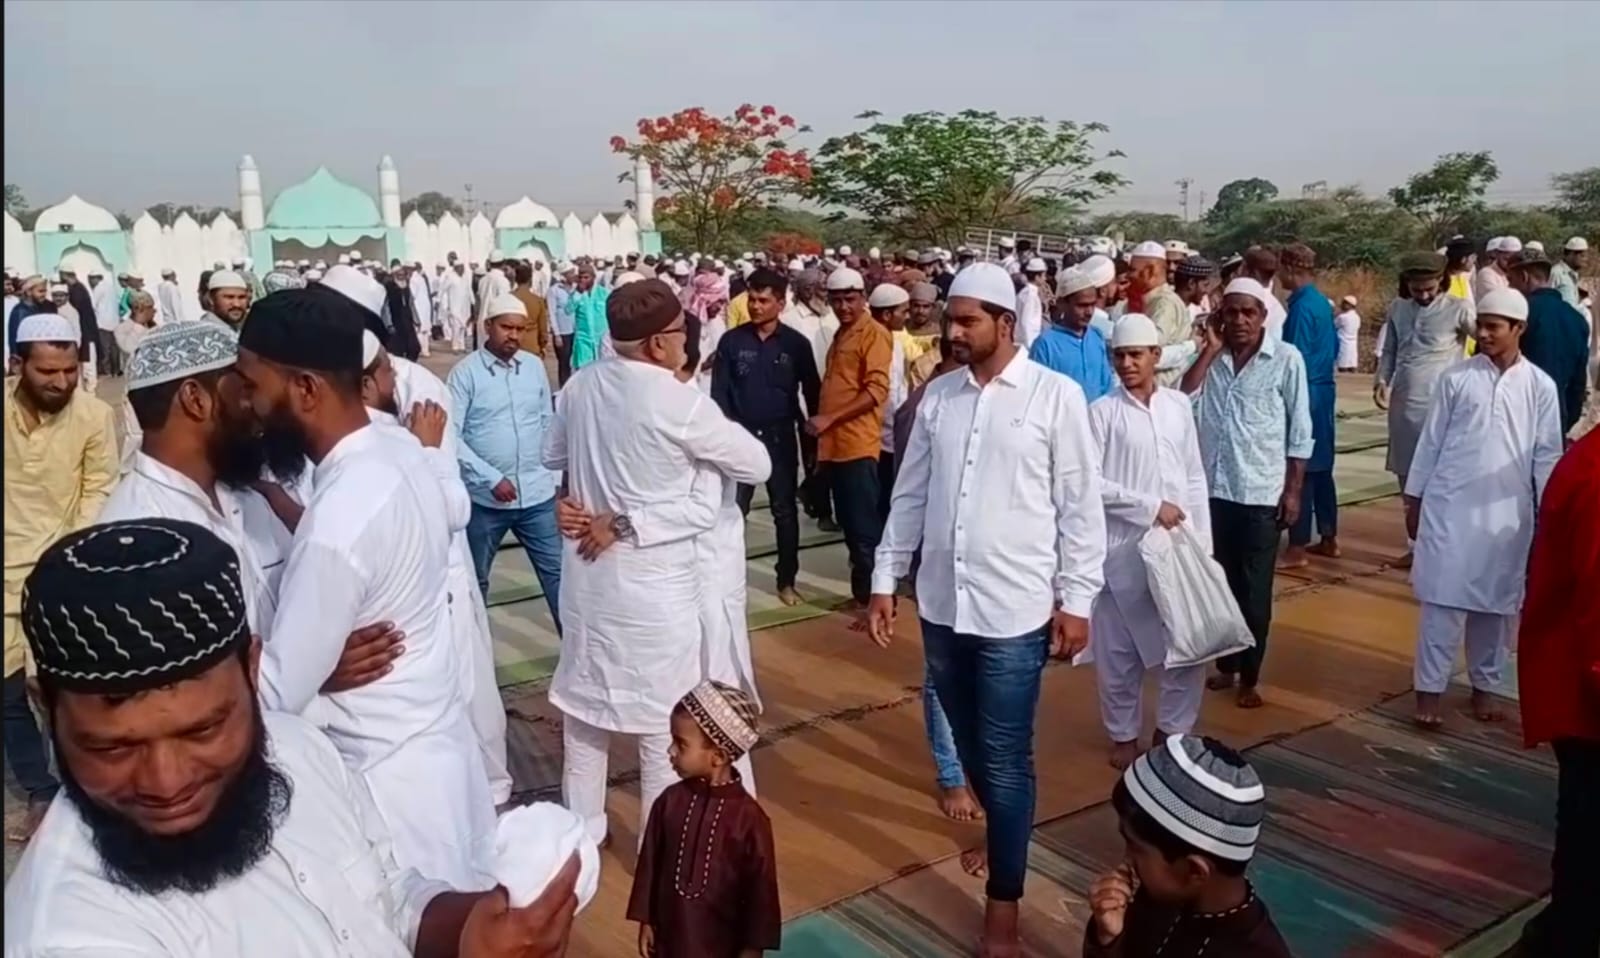 पूरे झाबुआ जिला में हर्षोल्लास के साथ मनाया गया ईद उल फितर का त्योहार | New India Times